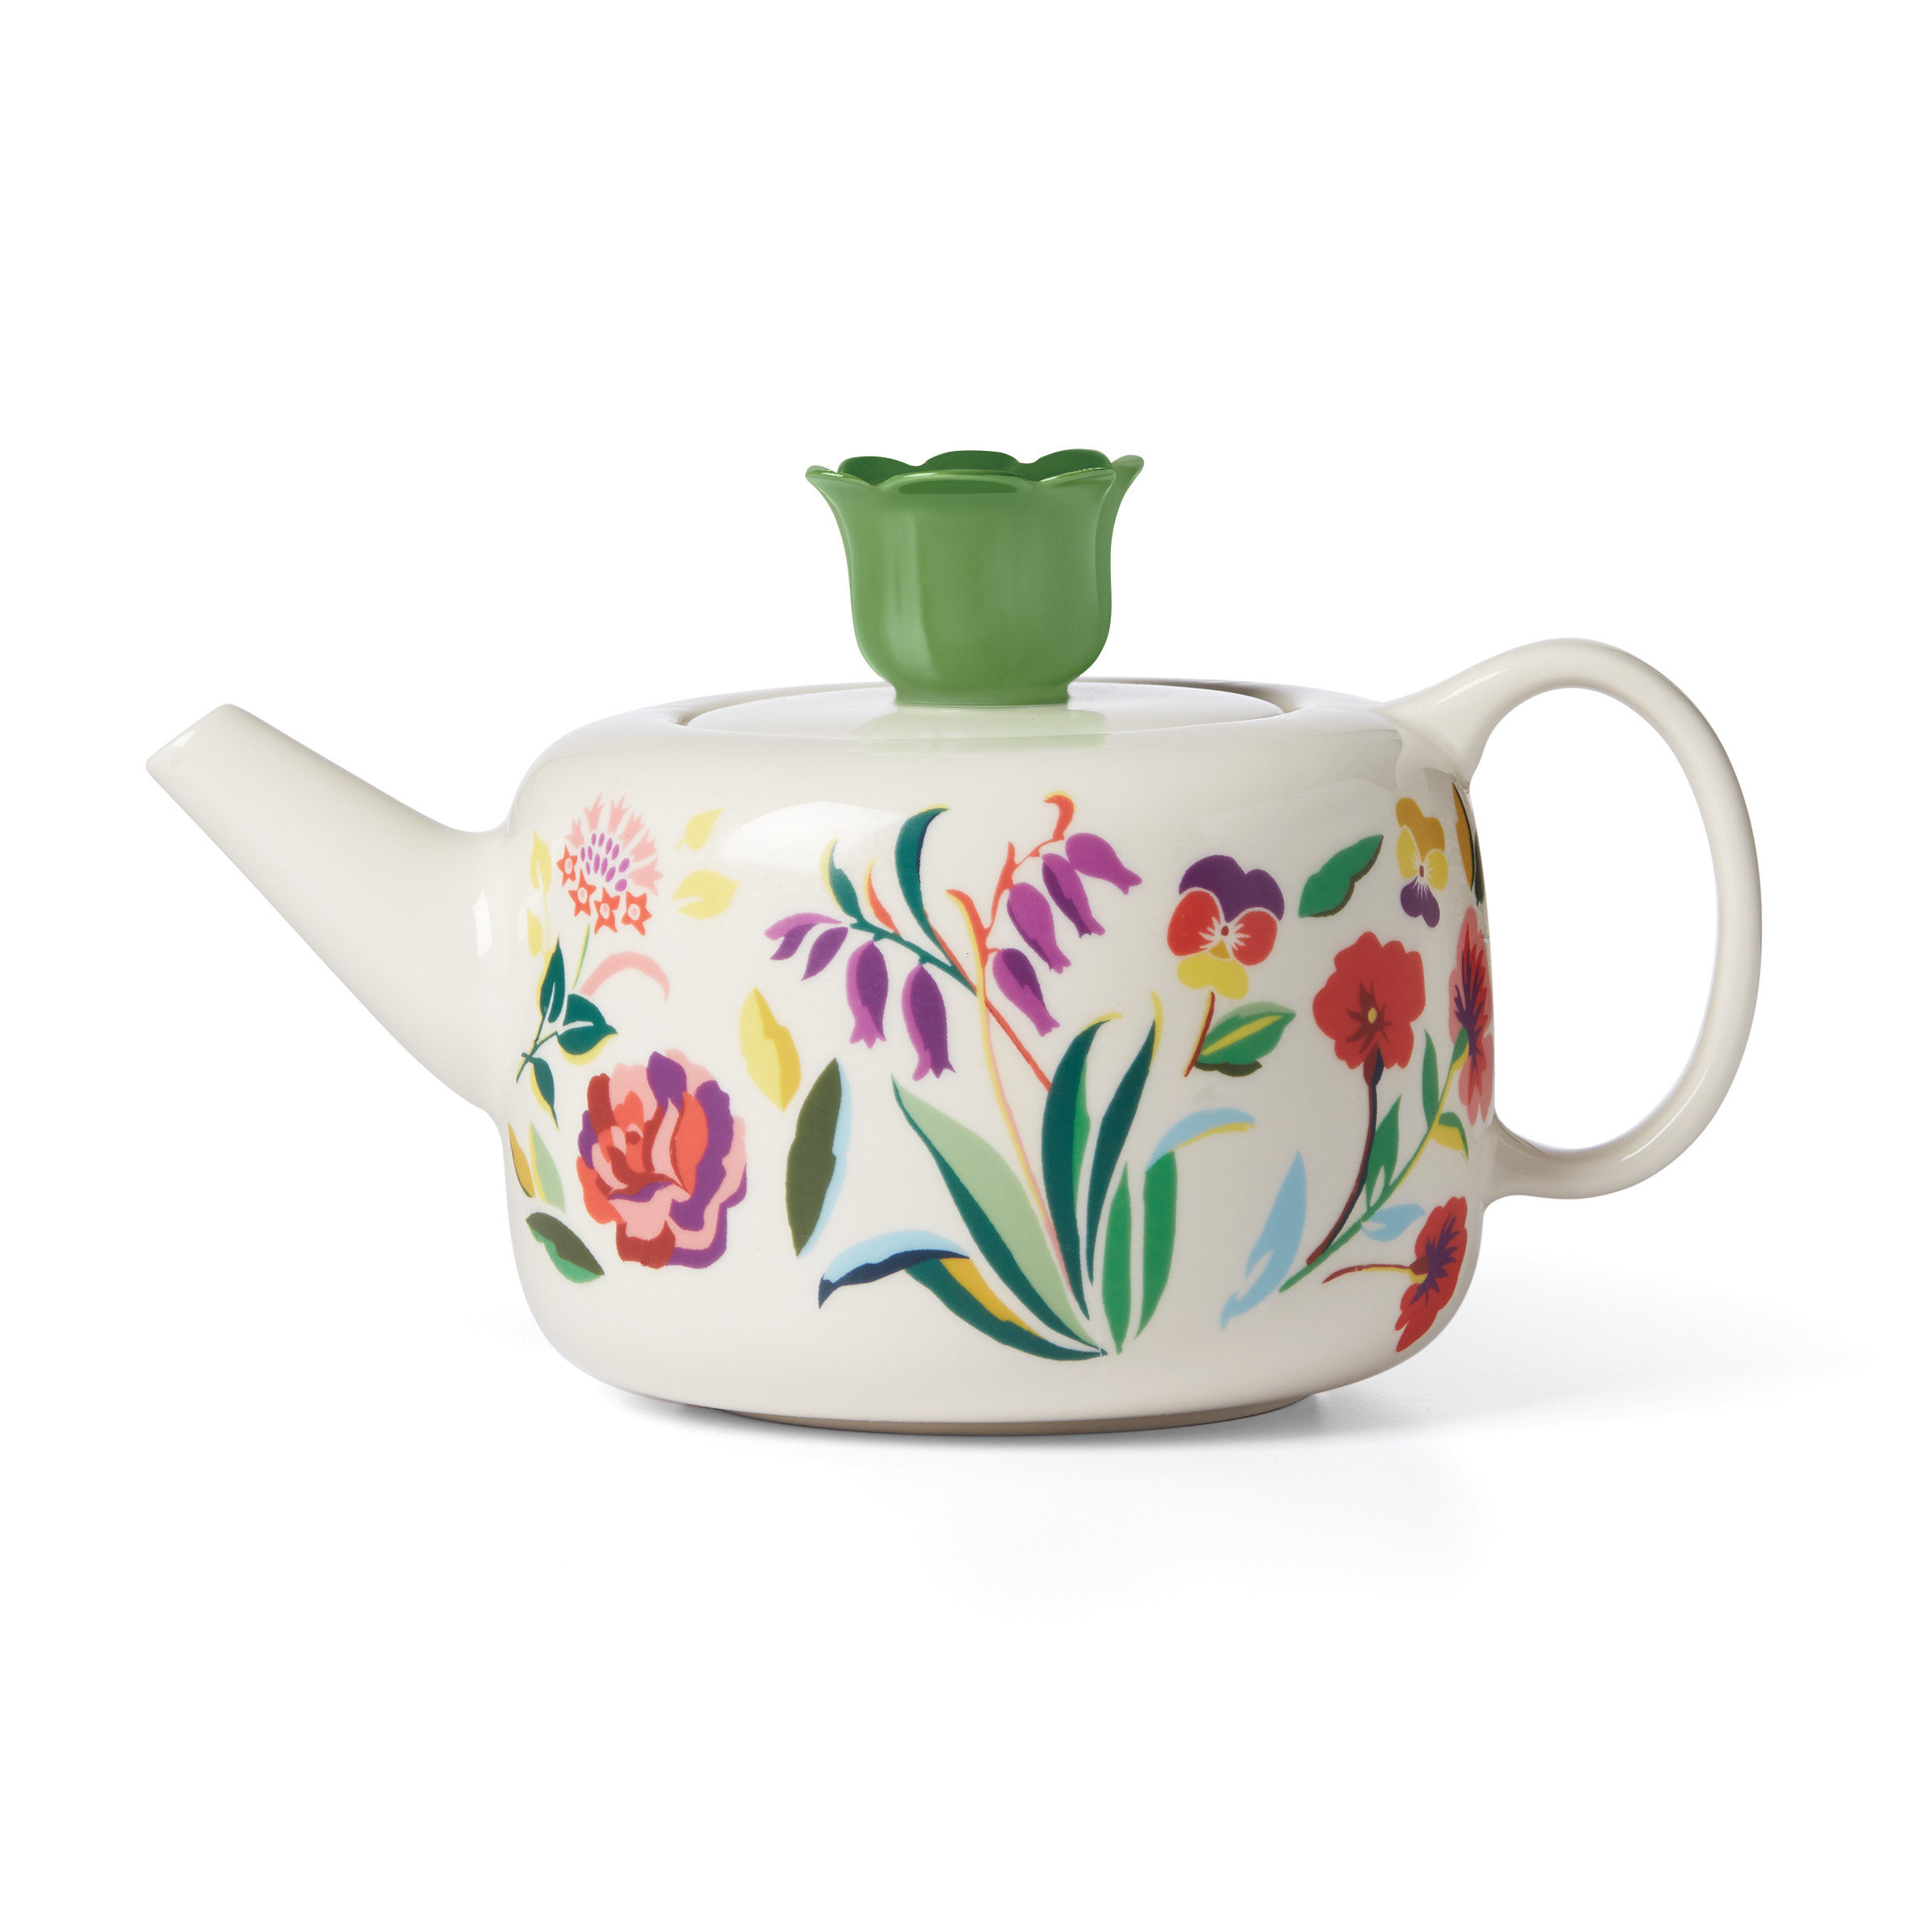 https://assets.wfcdn.com/im/85445516/compr-r85/2225/222557537/ks-garden-floral-teapot.jpg